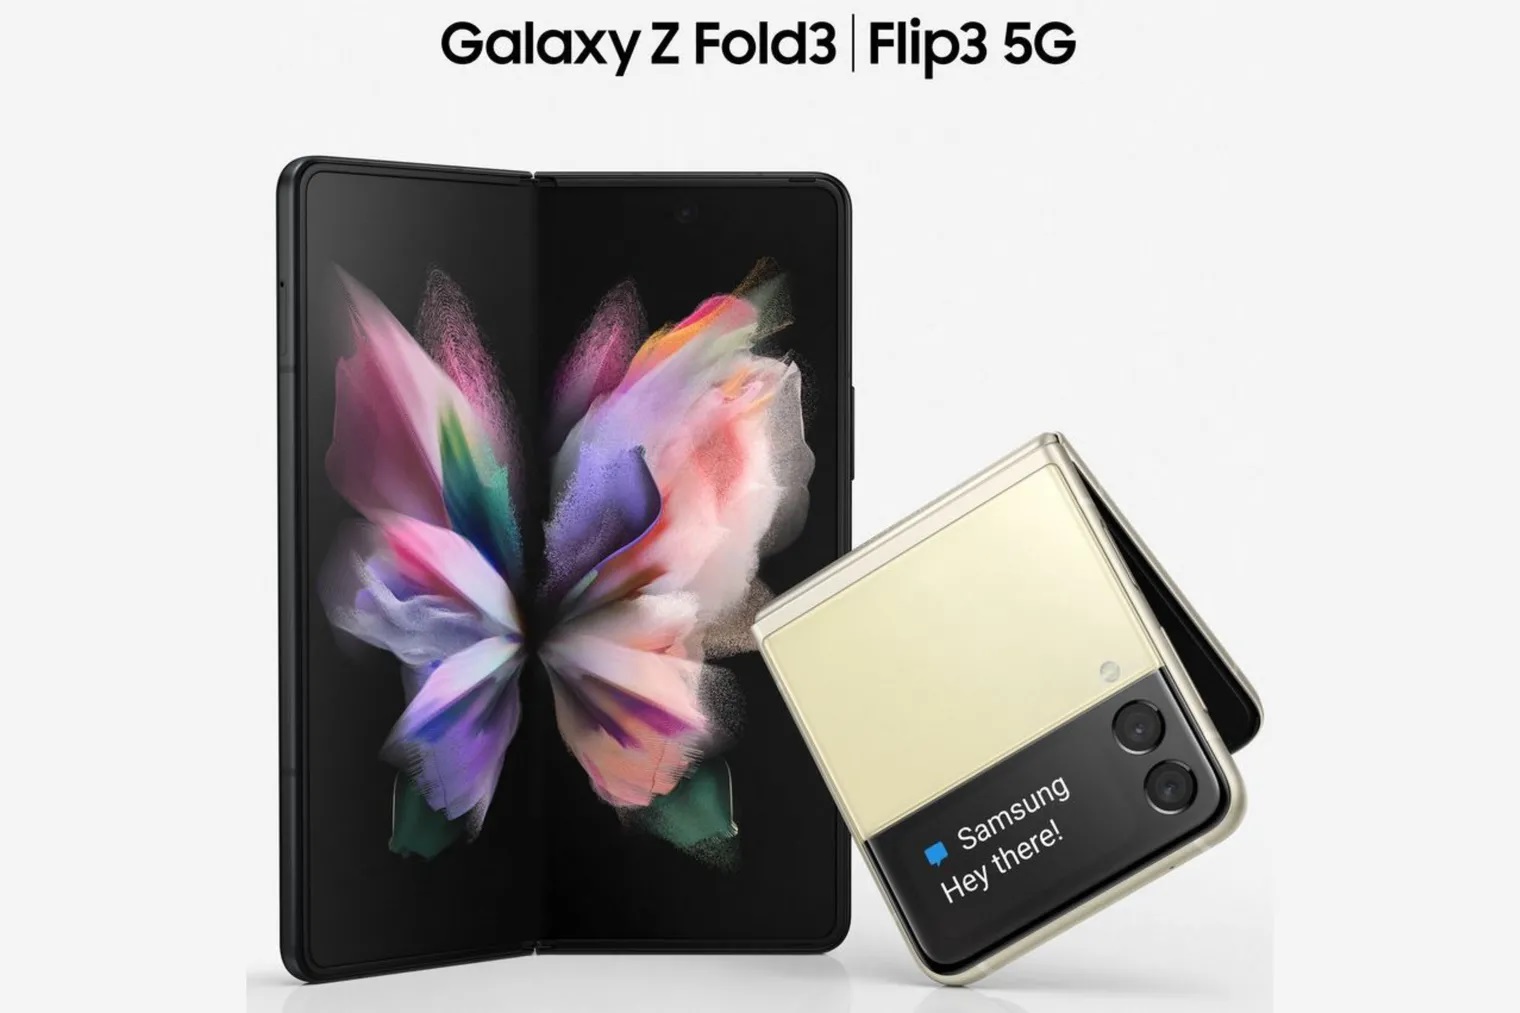 Αποκαλύφθηκαν ανεπίσημα τα νέα Galaxy Z Fold3 και Flip3 5G της Samsung